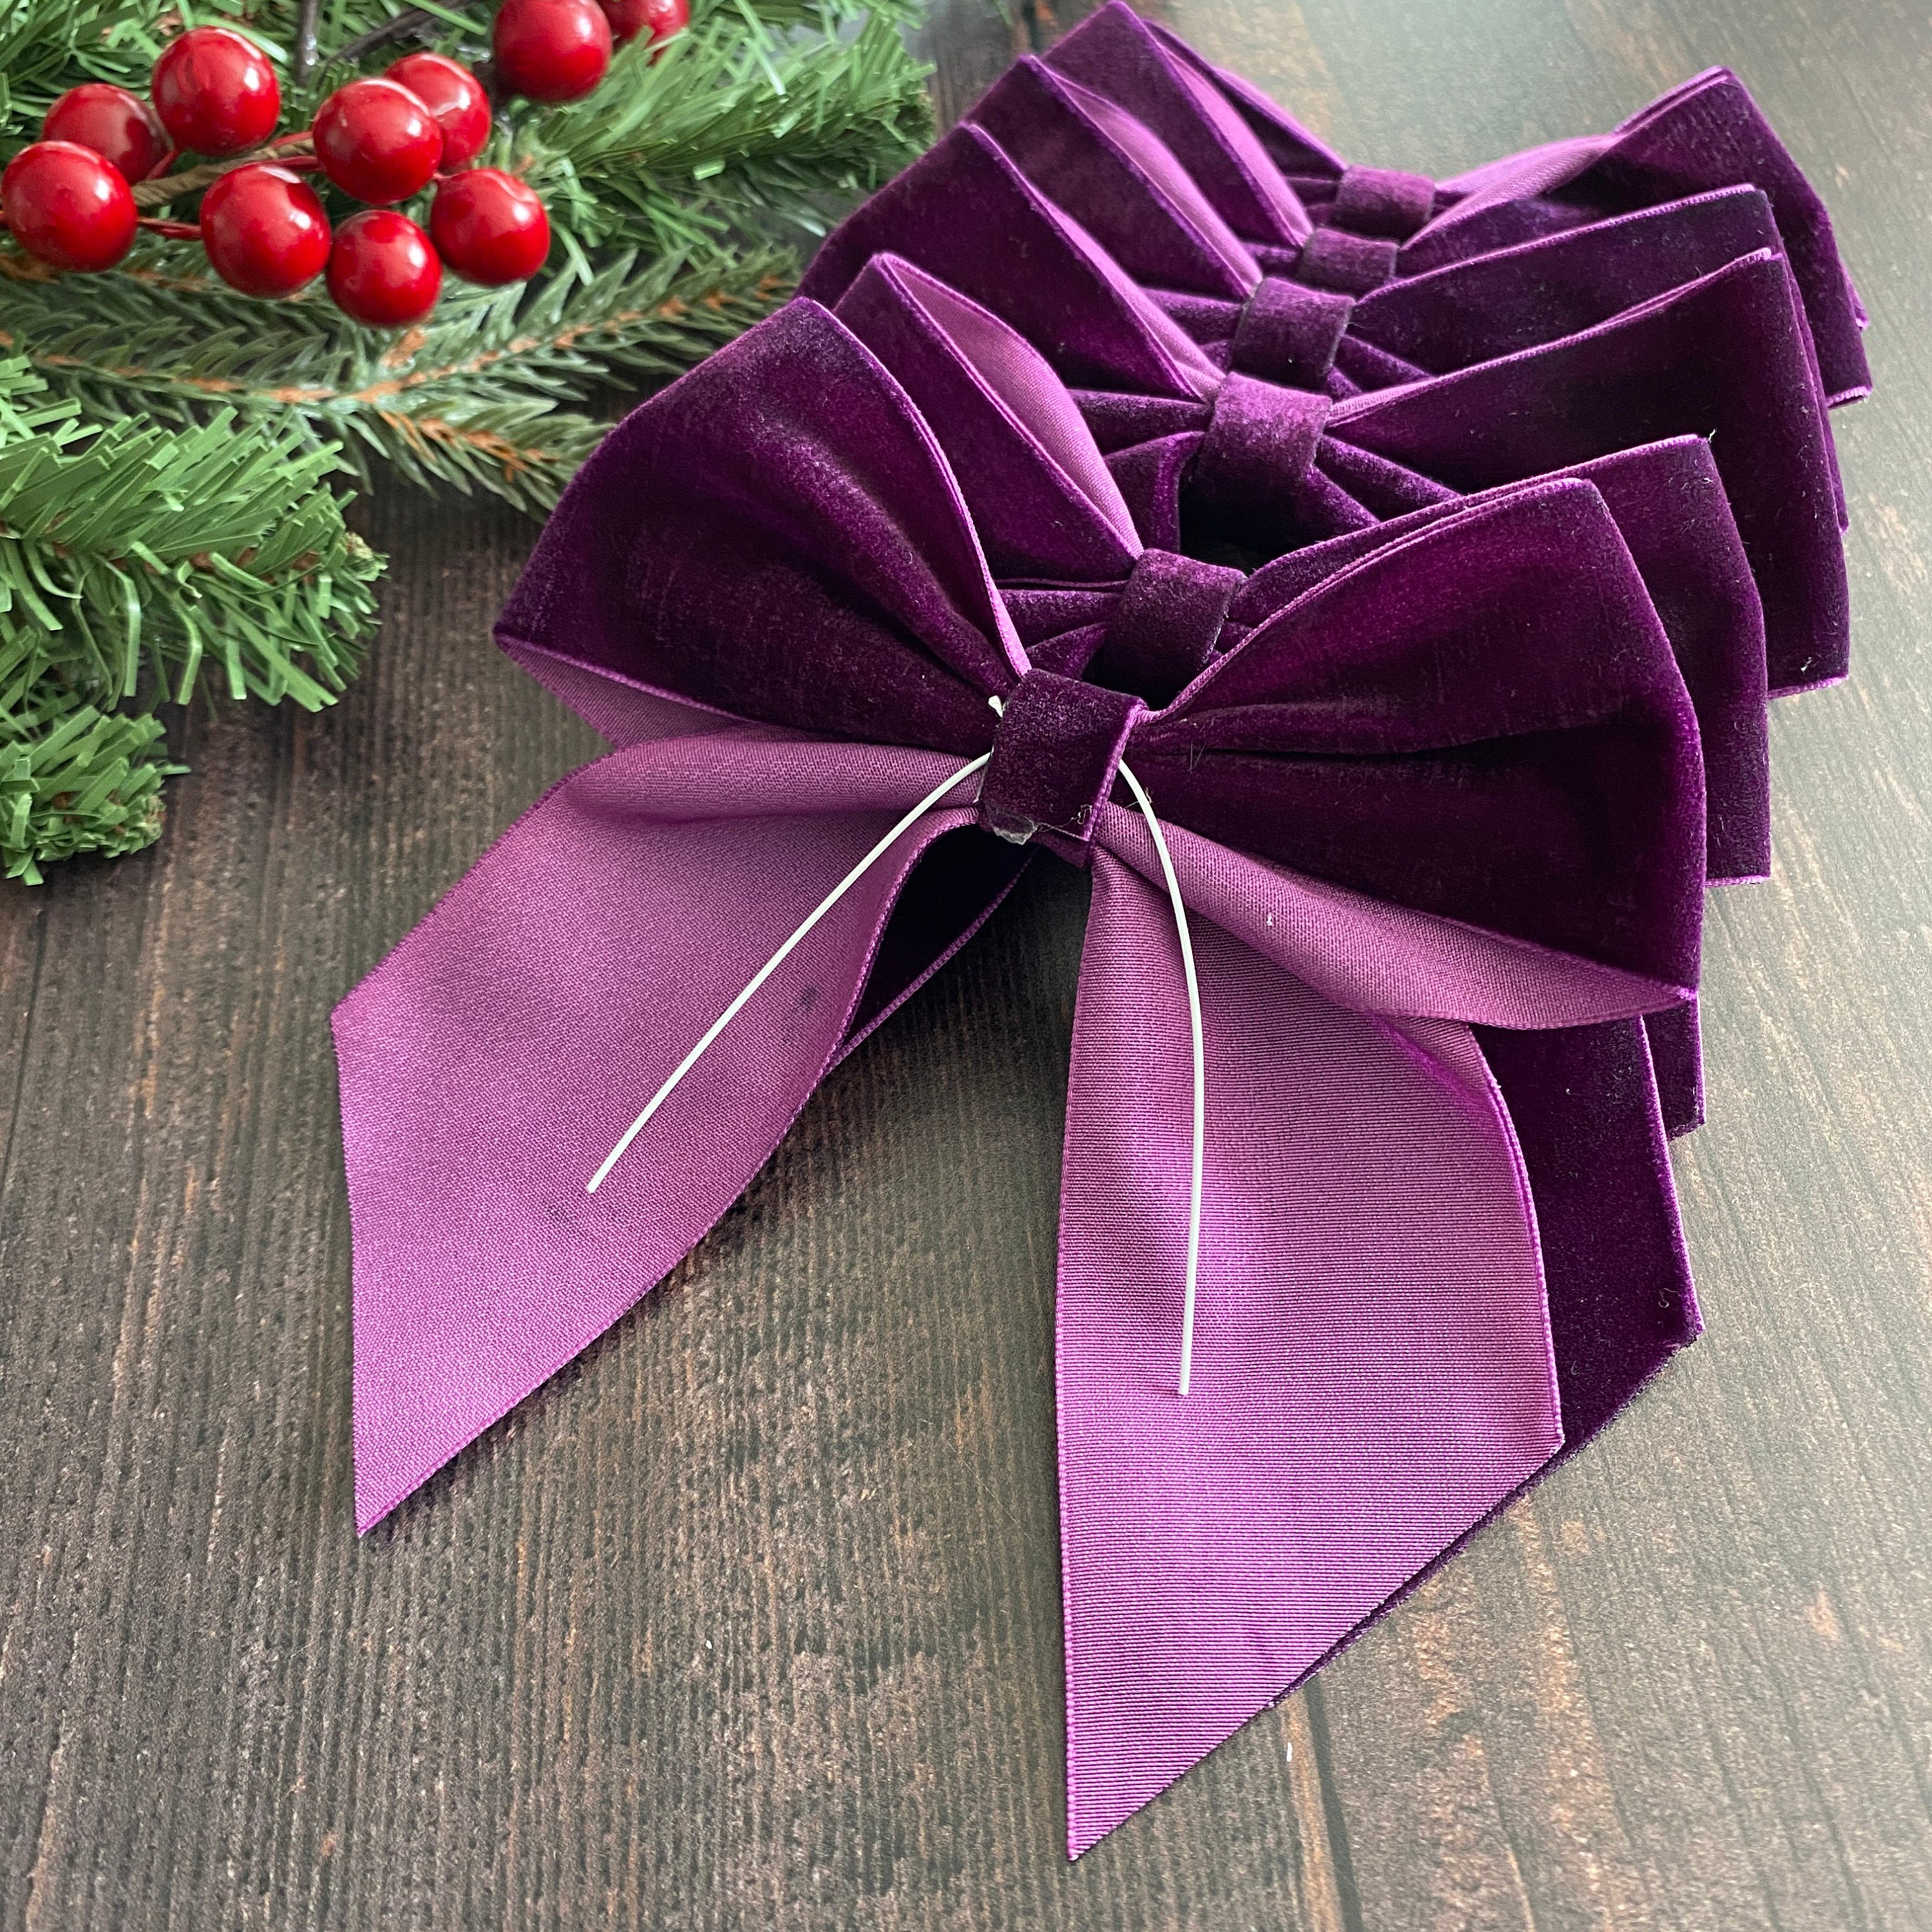 Velvet Ribbon Set 1.5 x 10 Yards, 1 Rolls, Dseason Handmade Purple Velvet Ribbon Set for Party Decor & Bow Making, Christmas Tree, Wreath